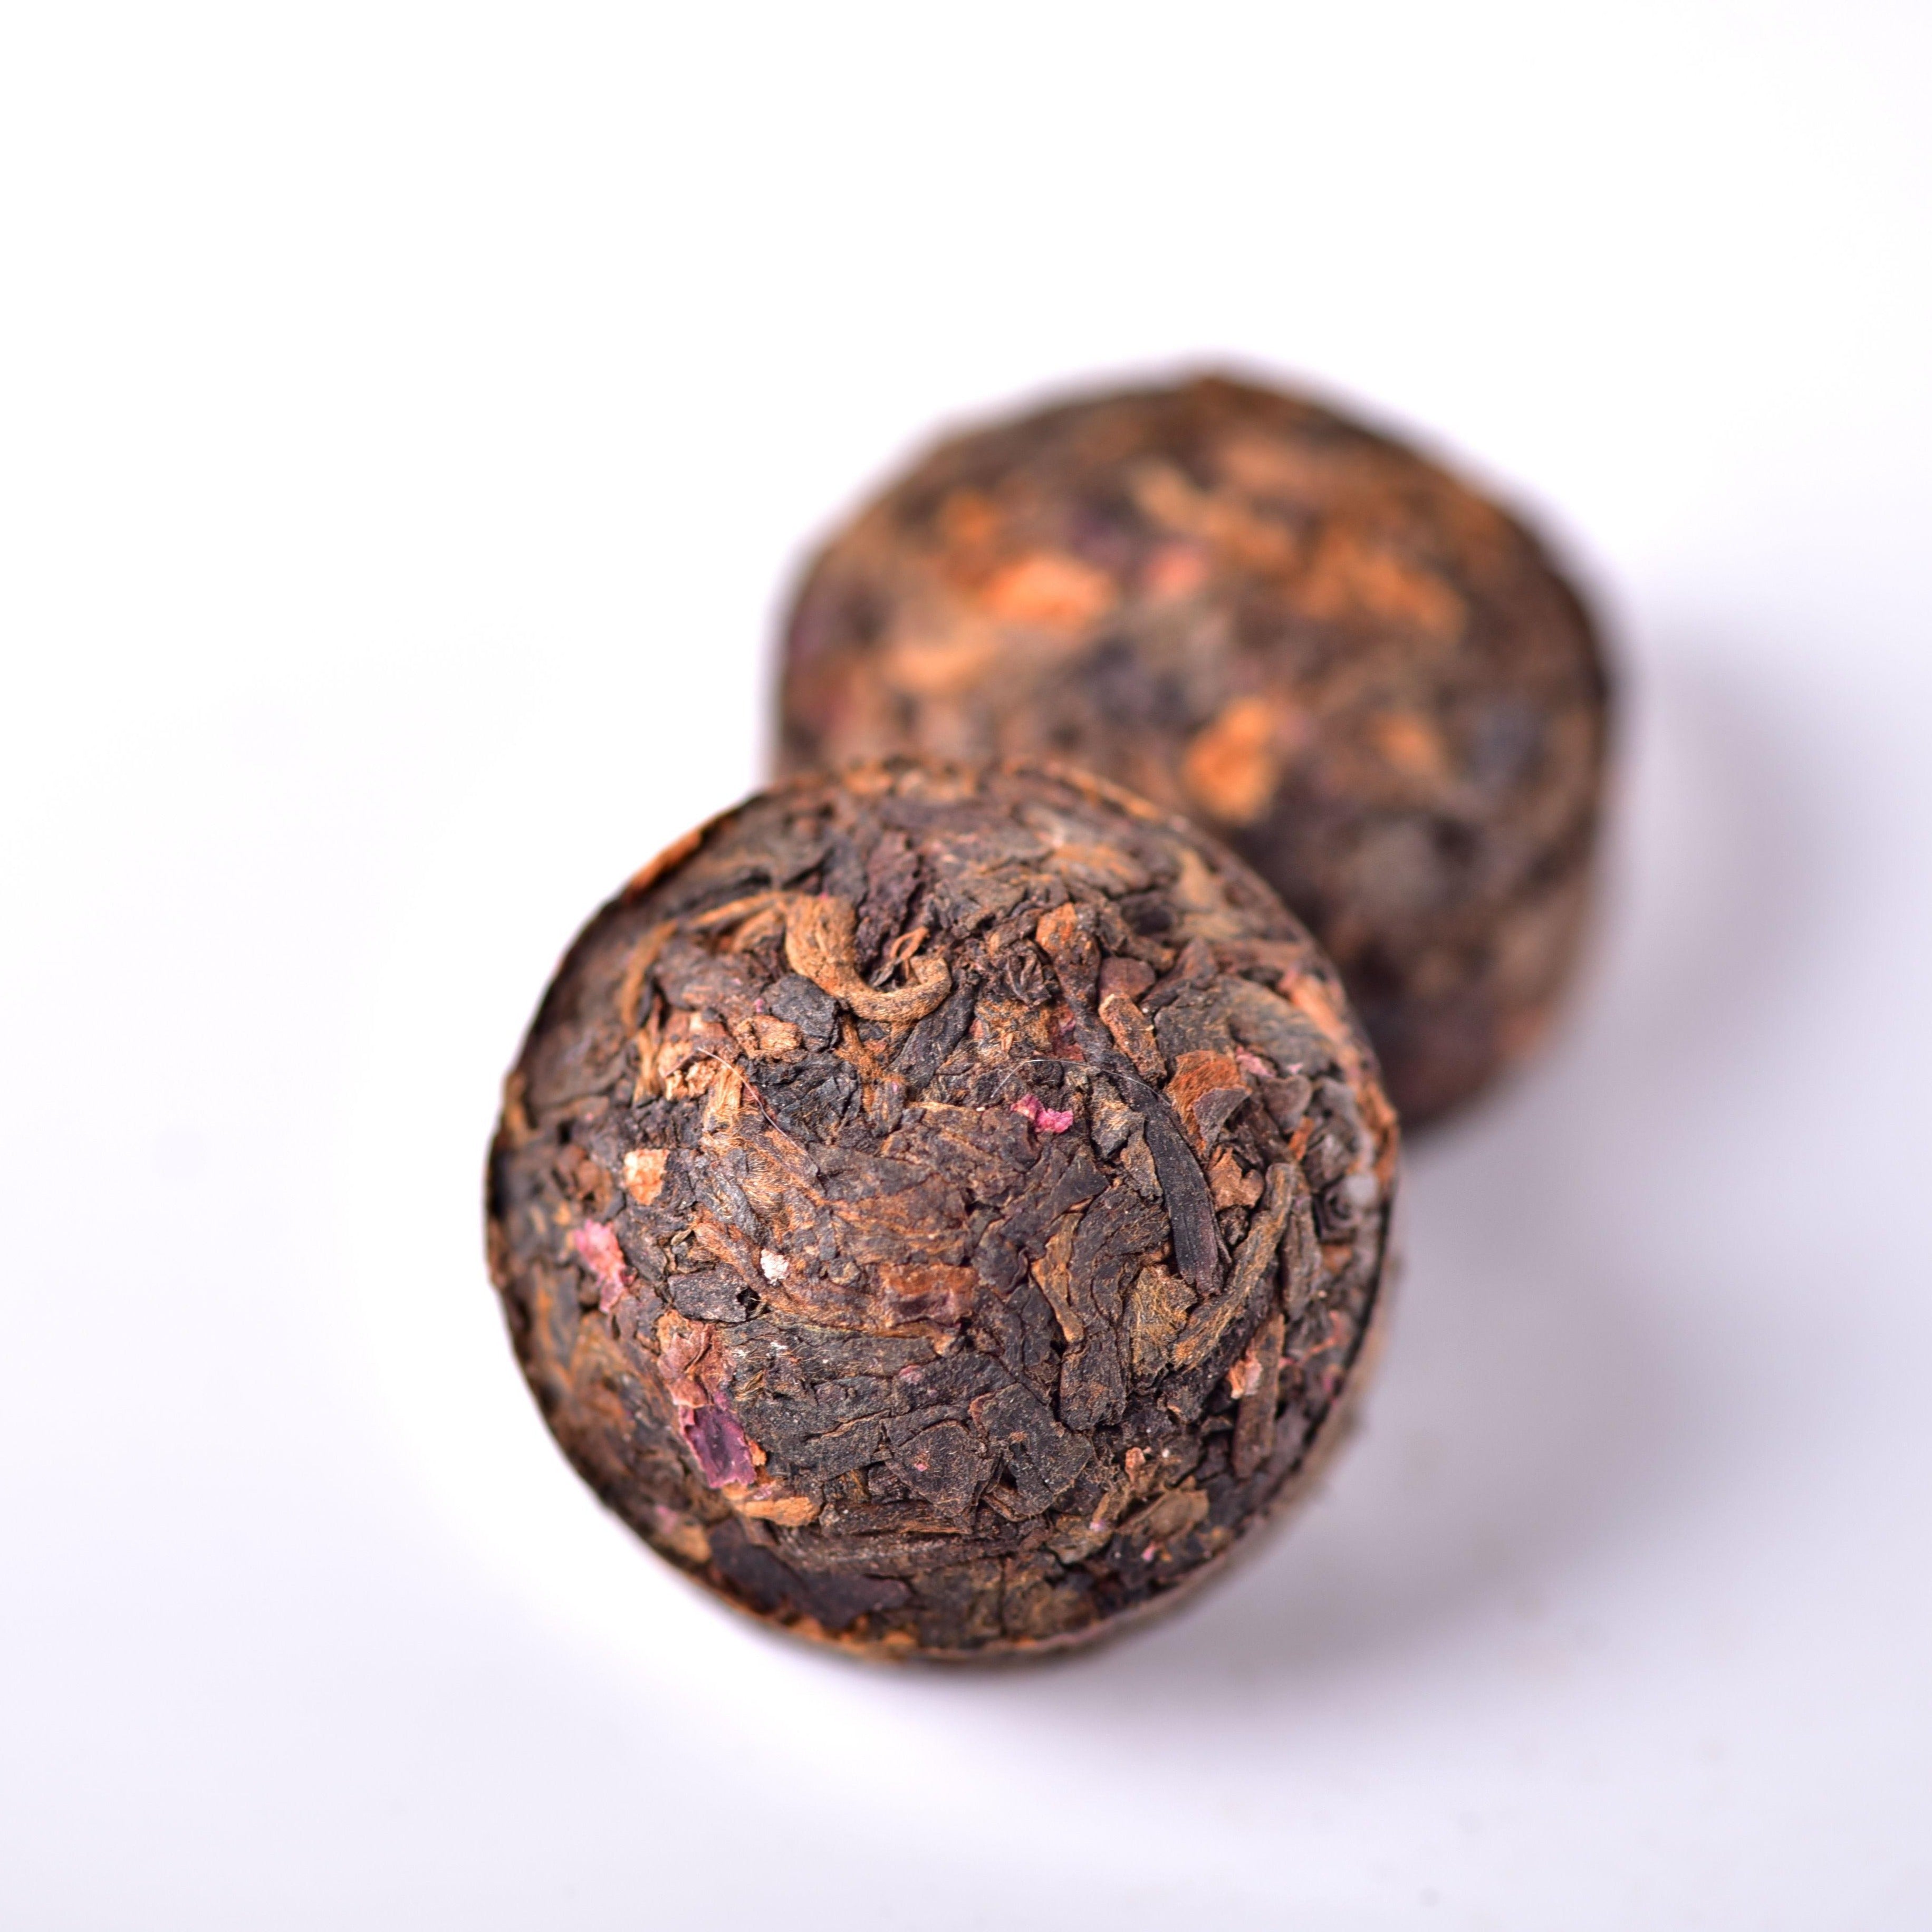 Rose Flavored Ripe Pu-Erh Mini Tuo Tea